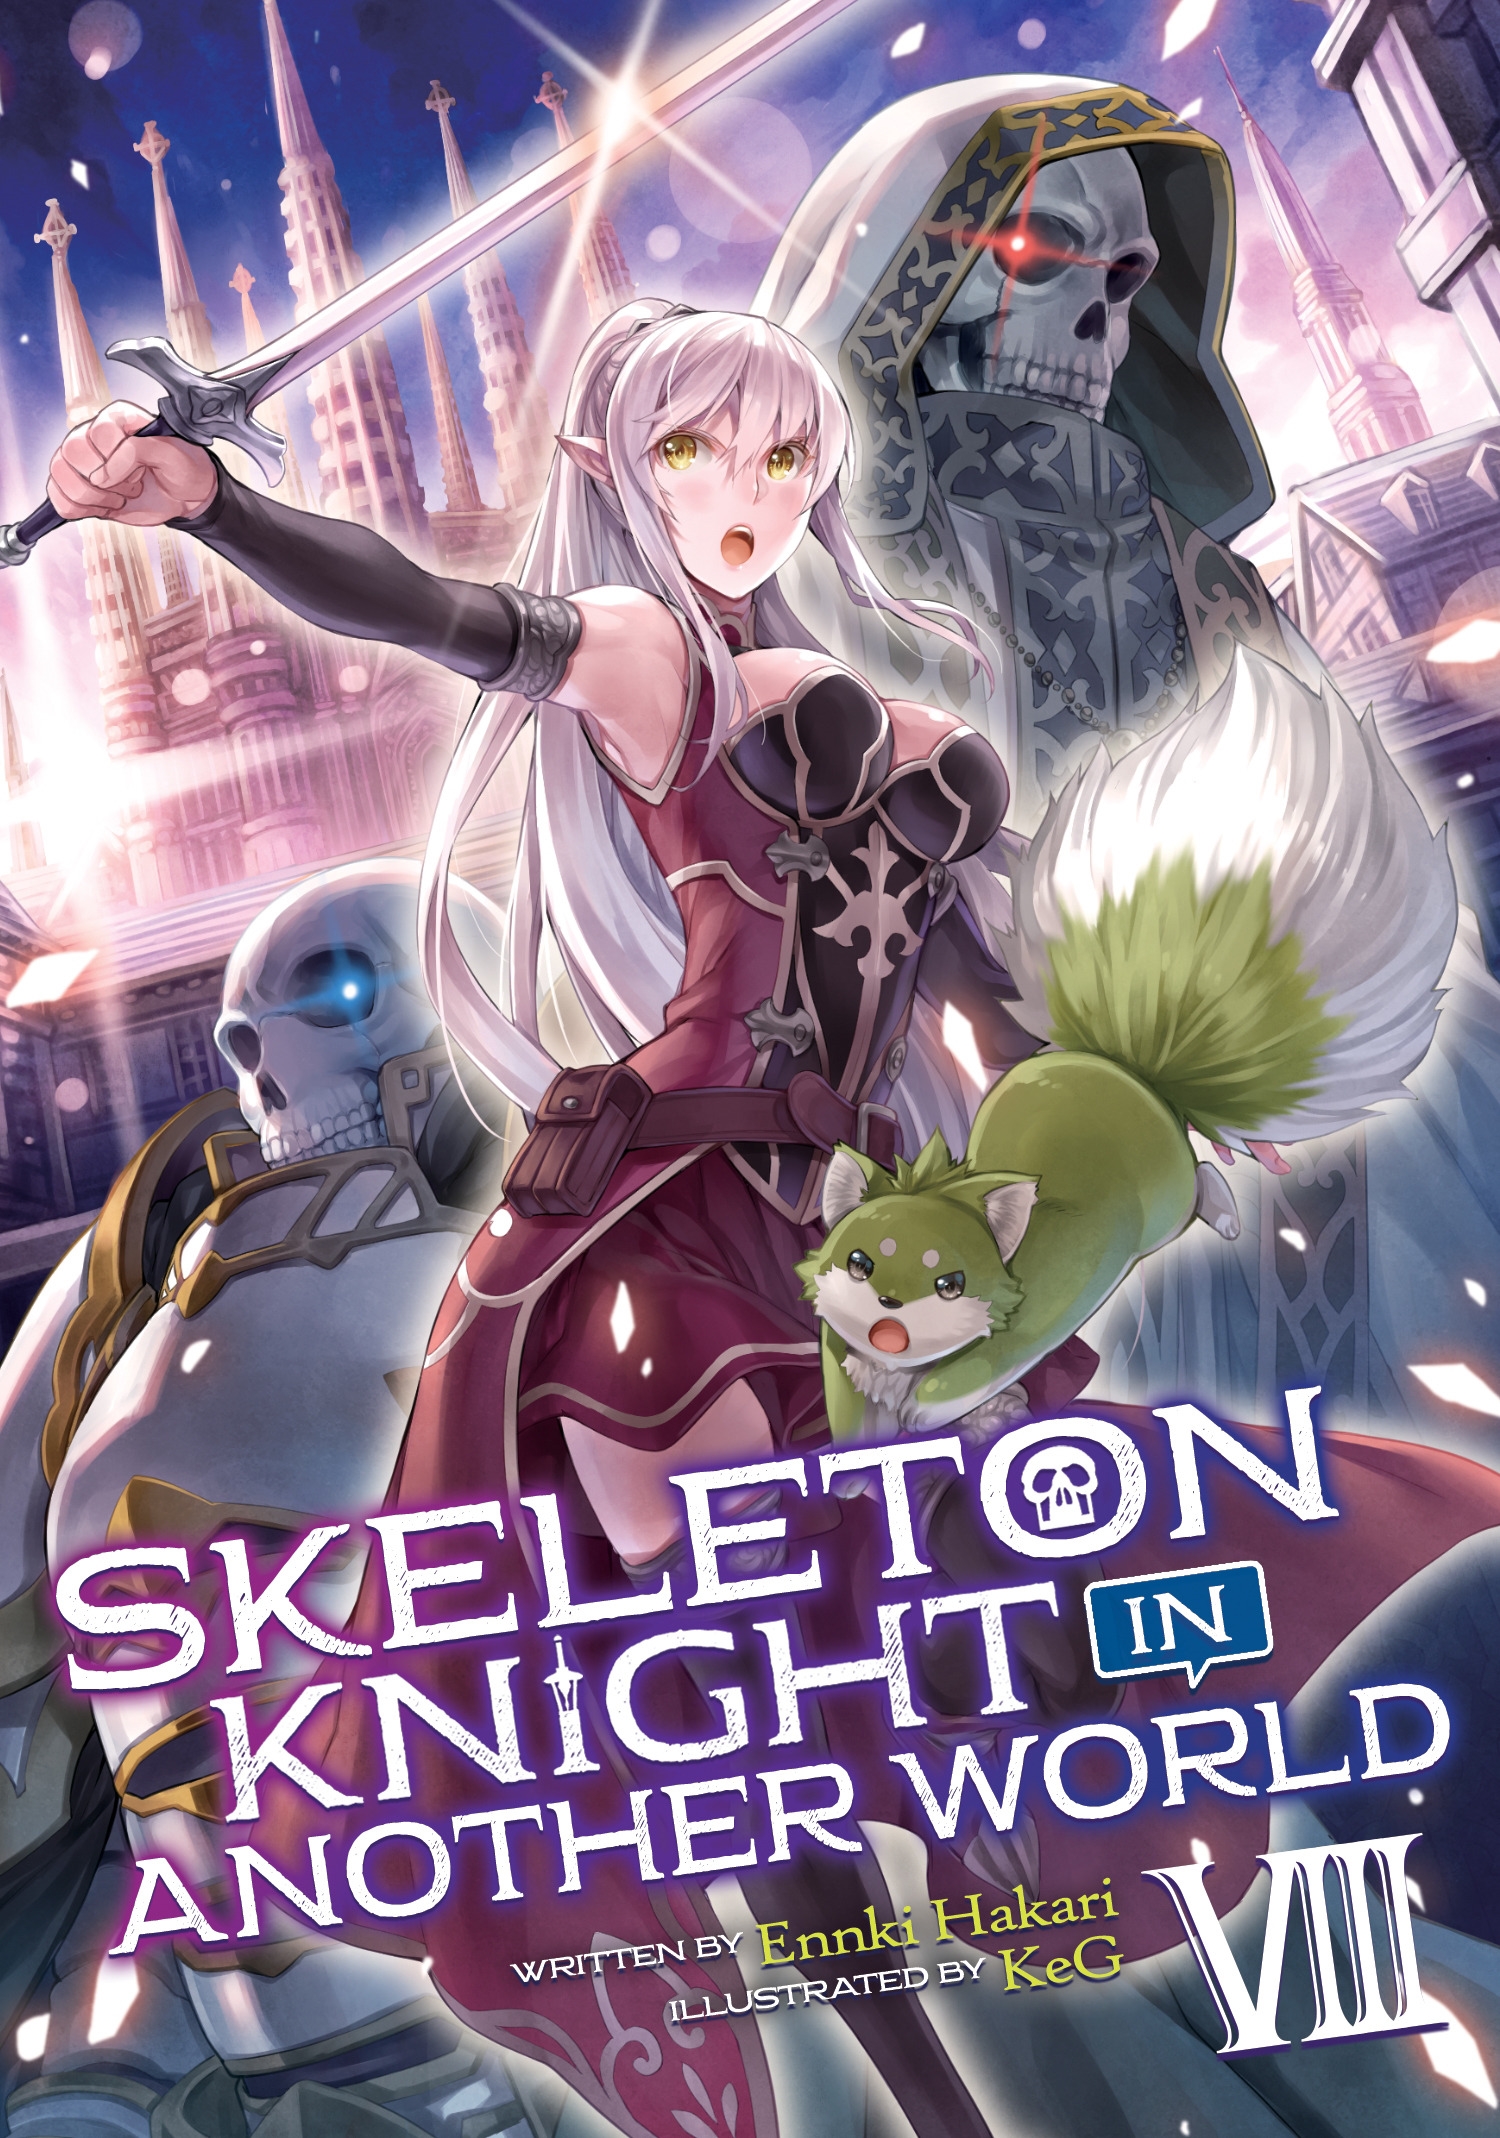 Skeleton Knight In Another World Light Novel Vol 8 By Ennki Hakari Penguin Books New Zealand